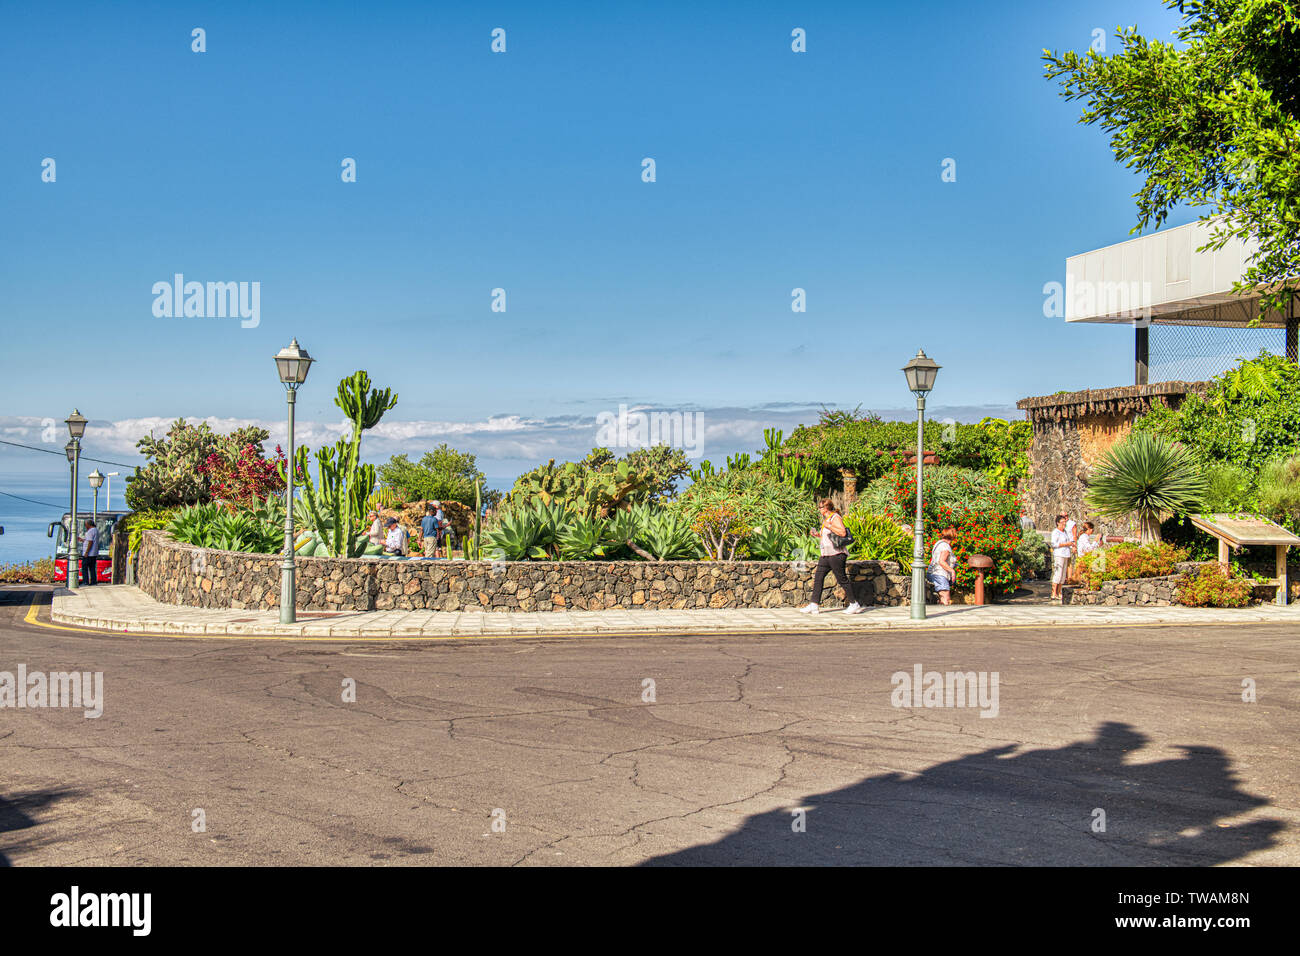 17.09.2018. La Palma, Canary Islands, Spain. Tourists visiting the Jardin La Era, La Palma, Canary Islands Stock Photo